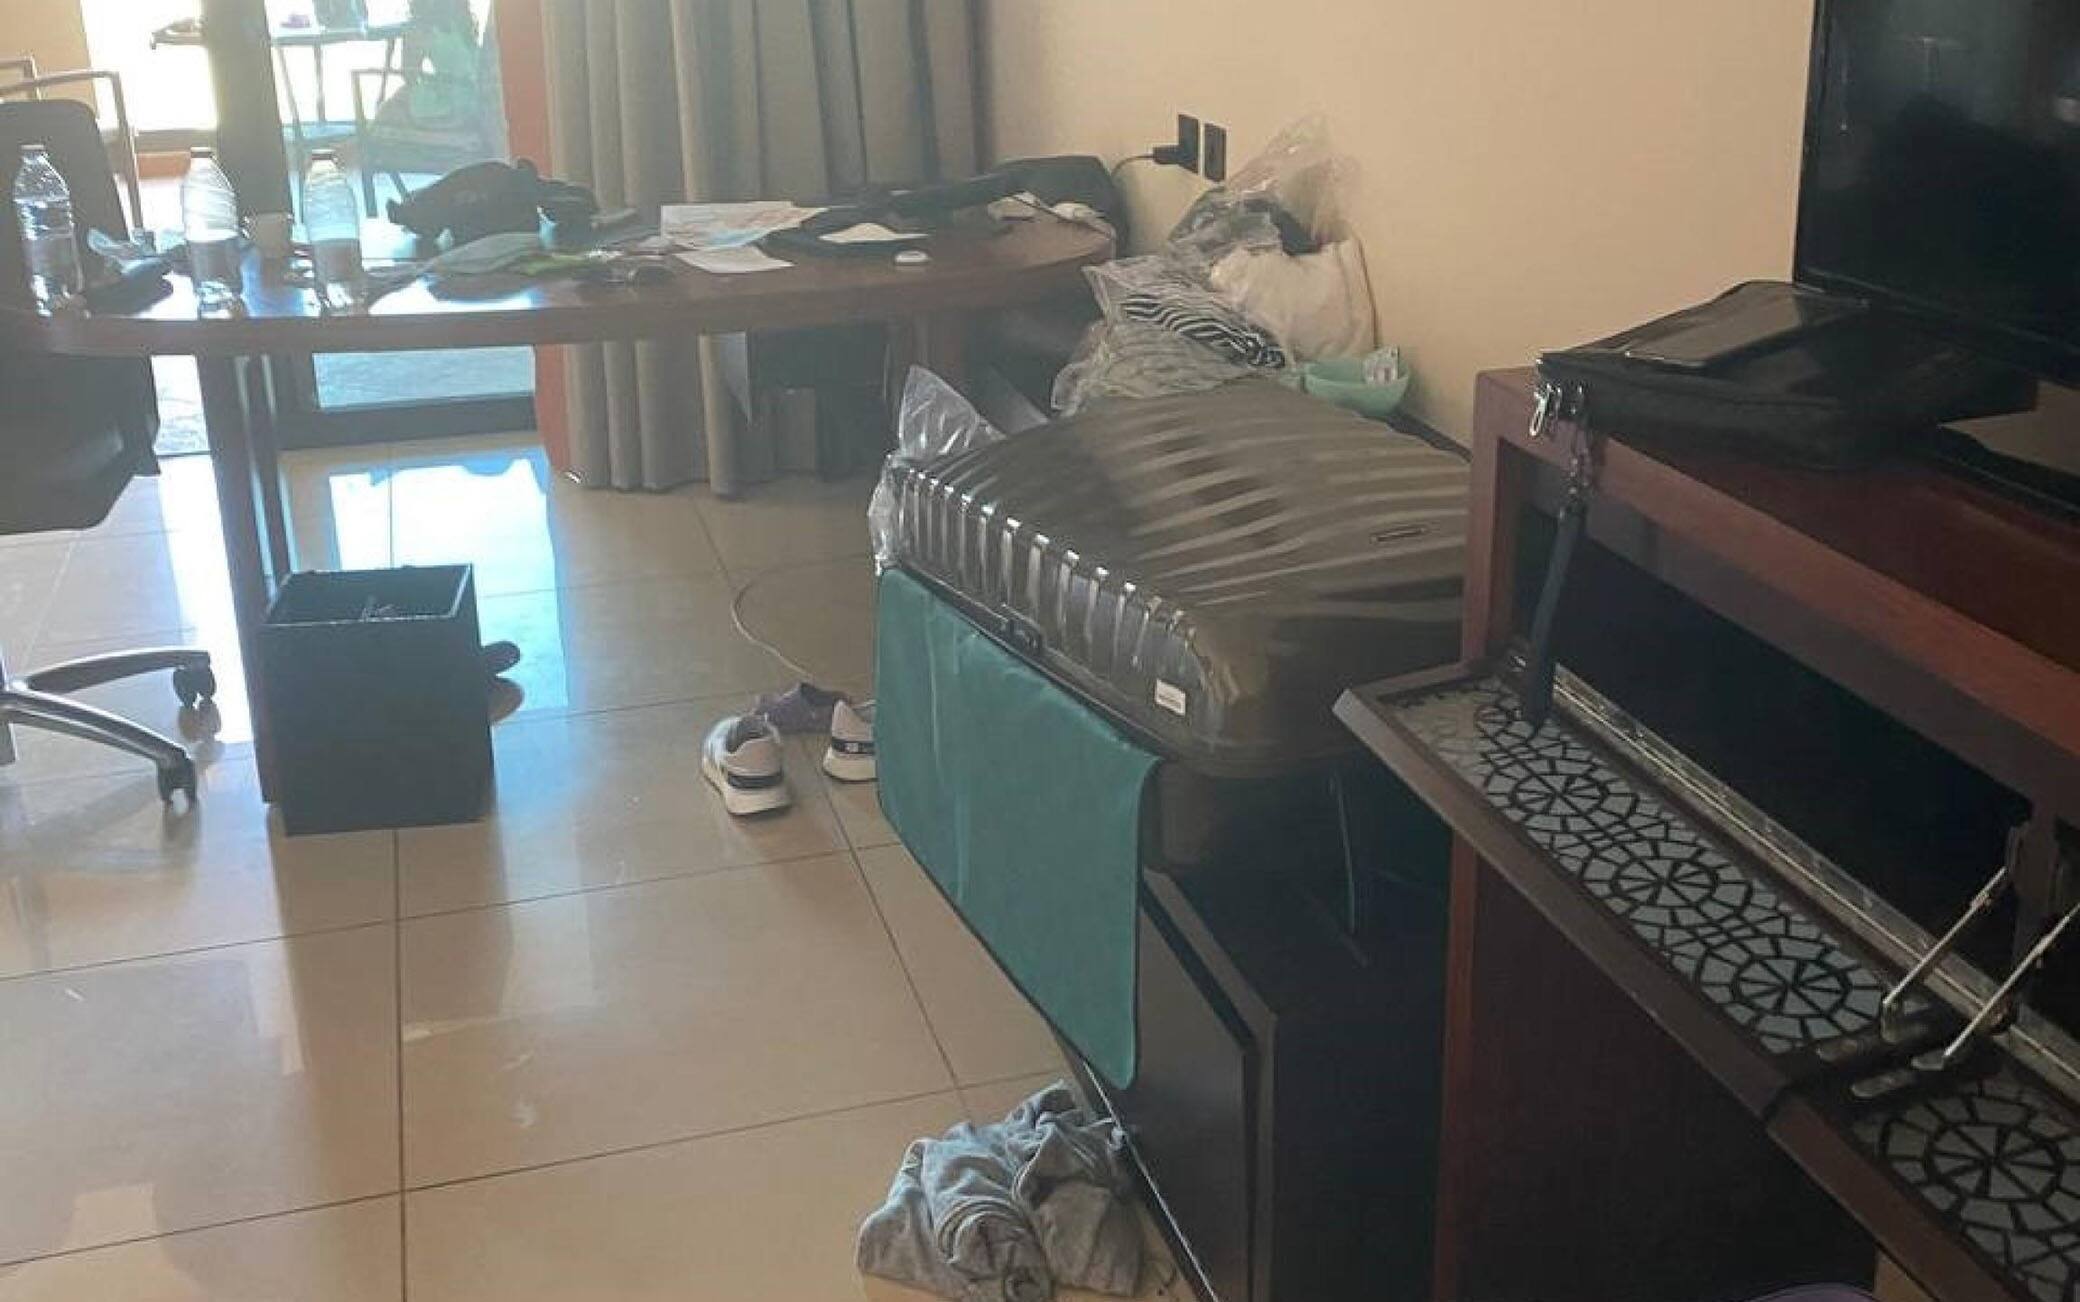 Un'immagine della camera di albergo a Dubai, dove Andrea Giuseppe Costantino, 49 anni, trader milanese nel petrolio, e' stato arrestato dopo una perquisizione davanti agli occhi di moglie e figlioletta. L'uomo da tre mesi e mezzo e' in prigione ad Abu Dhabi, 3 luglio 2021.
ANSA